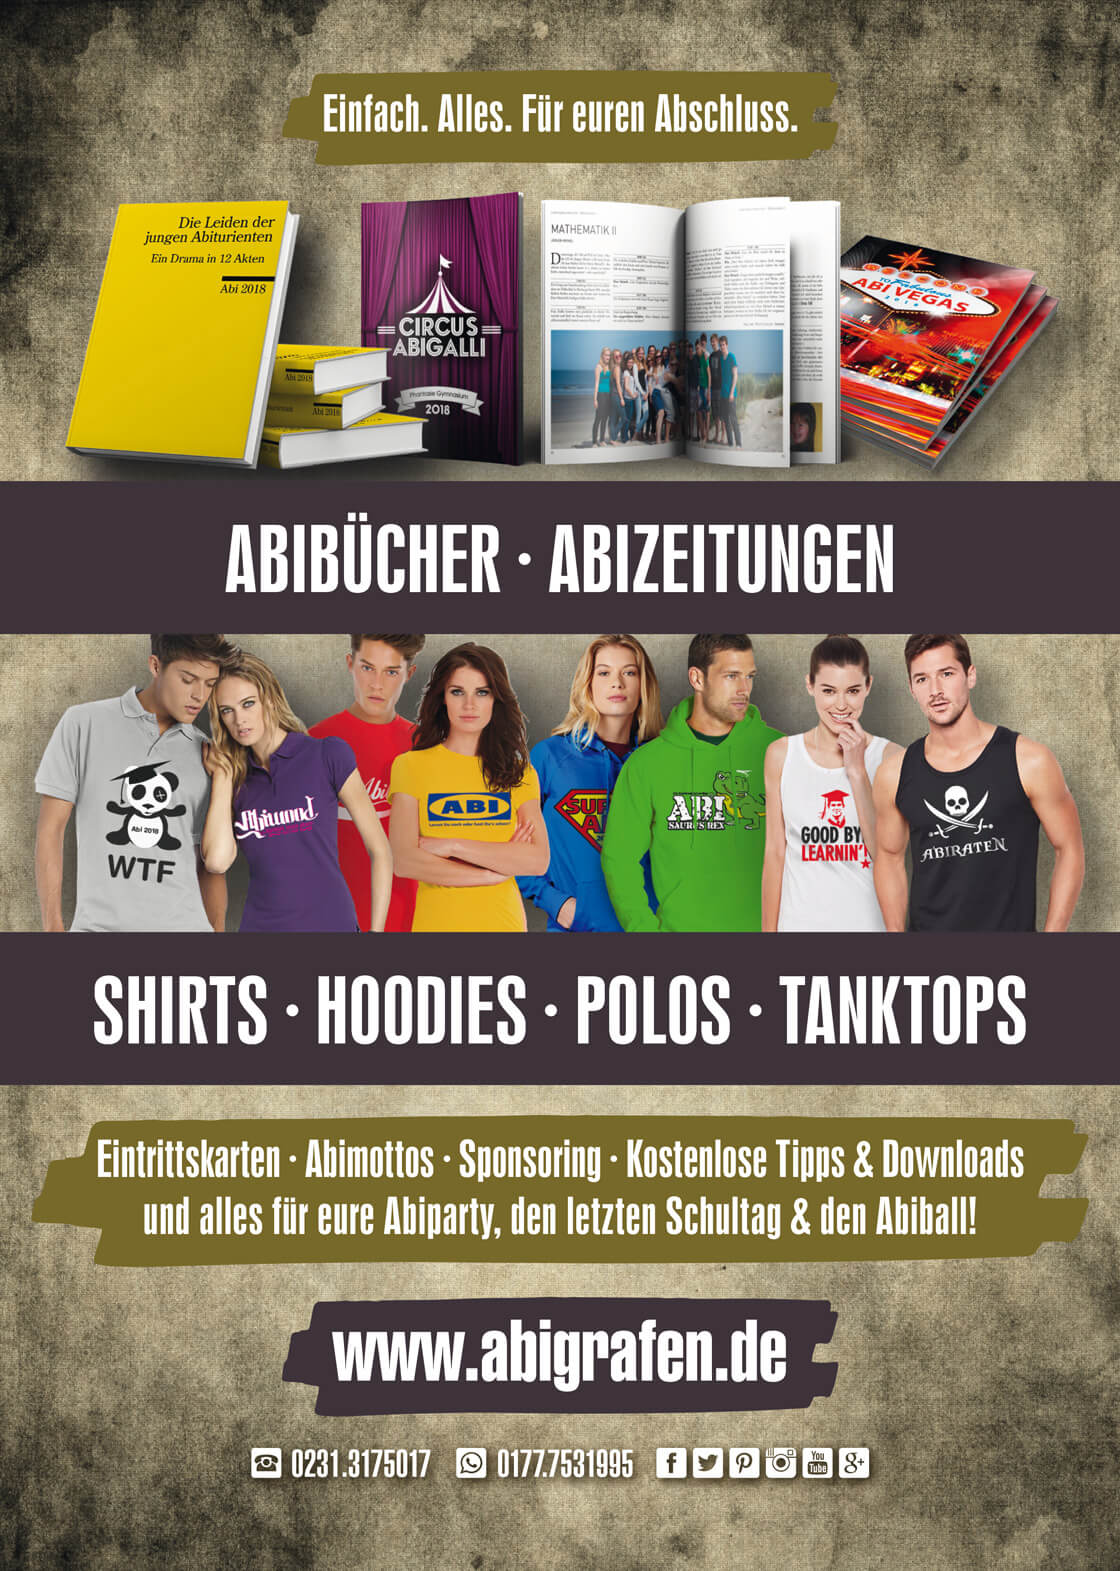 Werbeanzeige Abizeitung/Abibuch von abigrafen.de